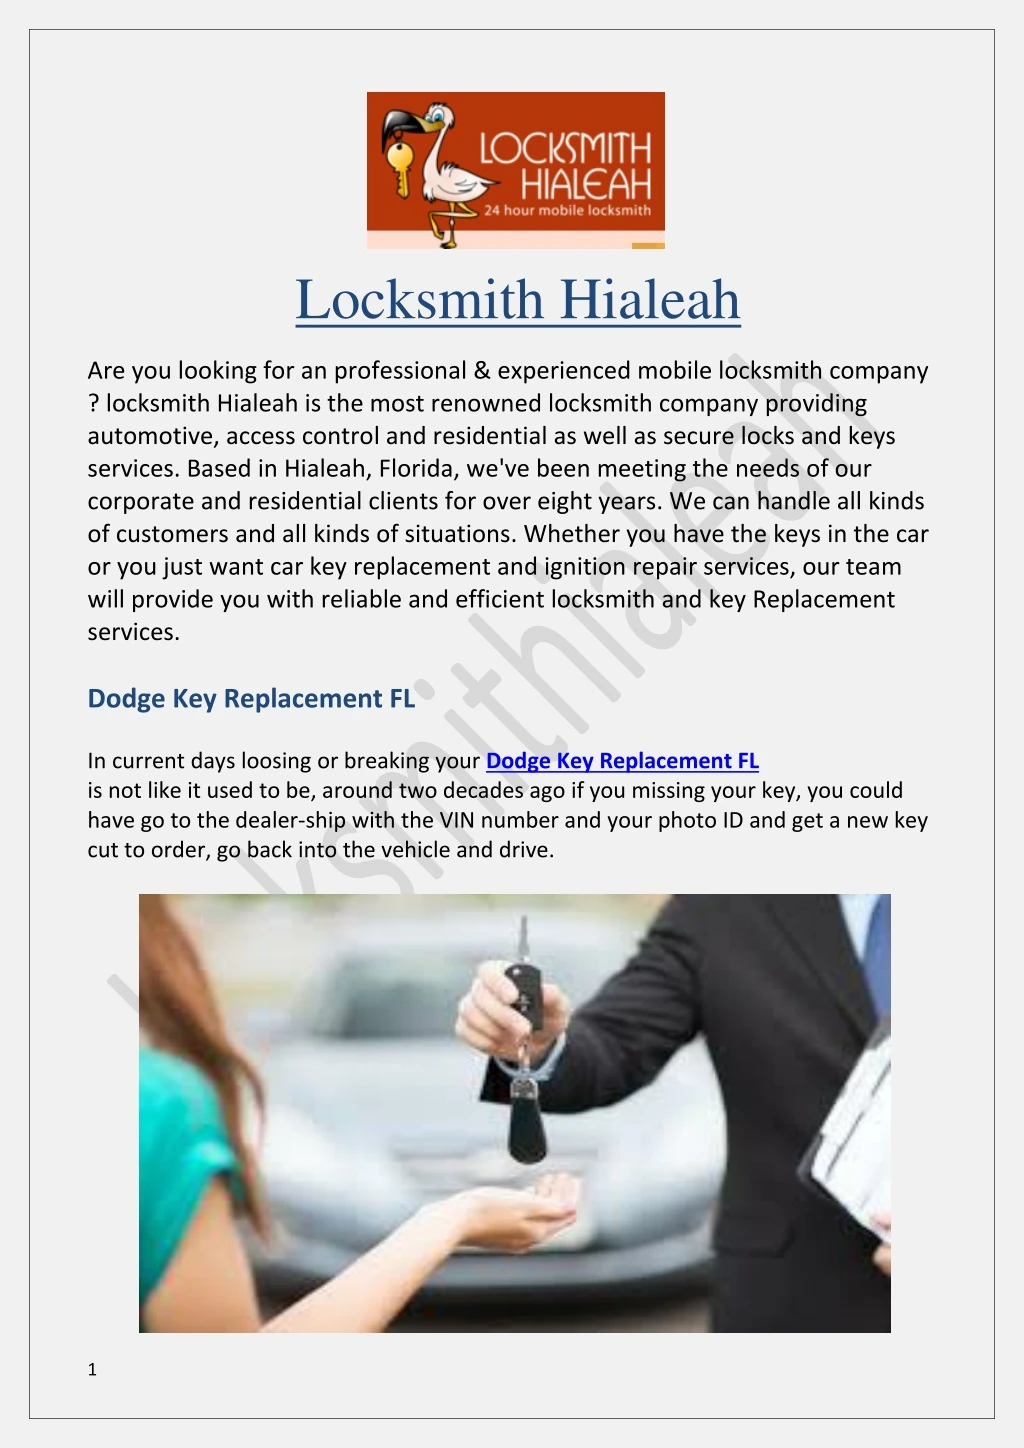 locksmith hialeah